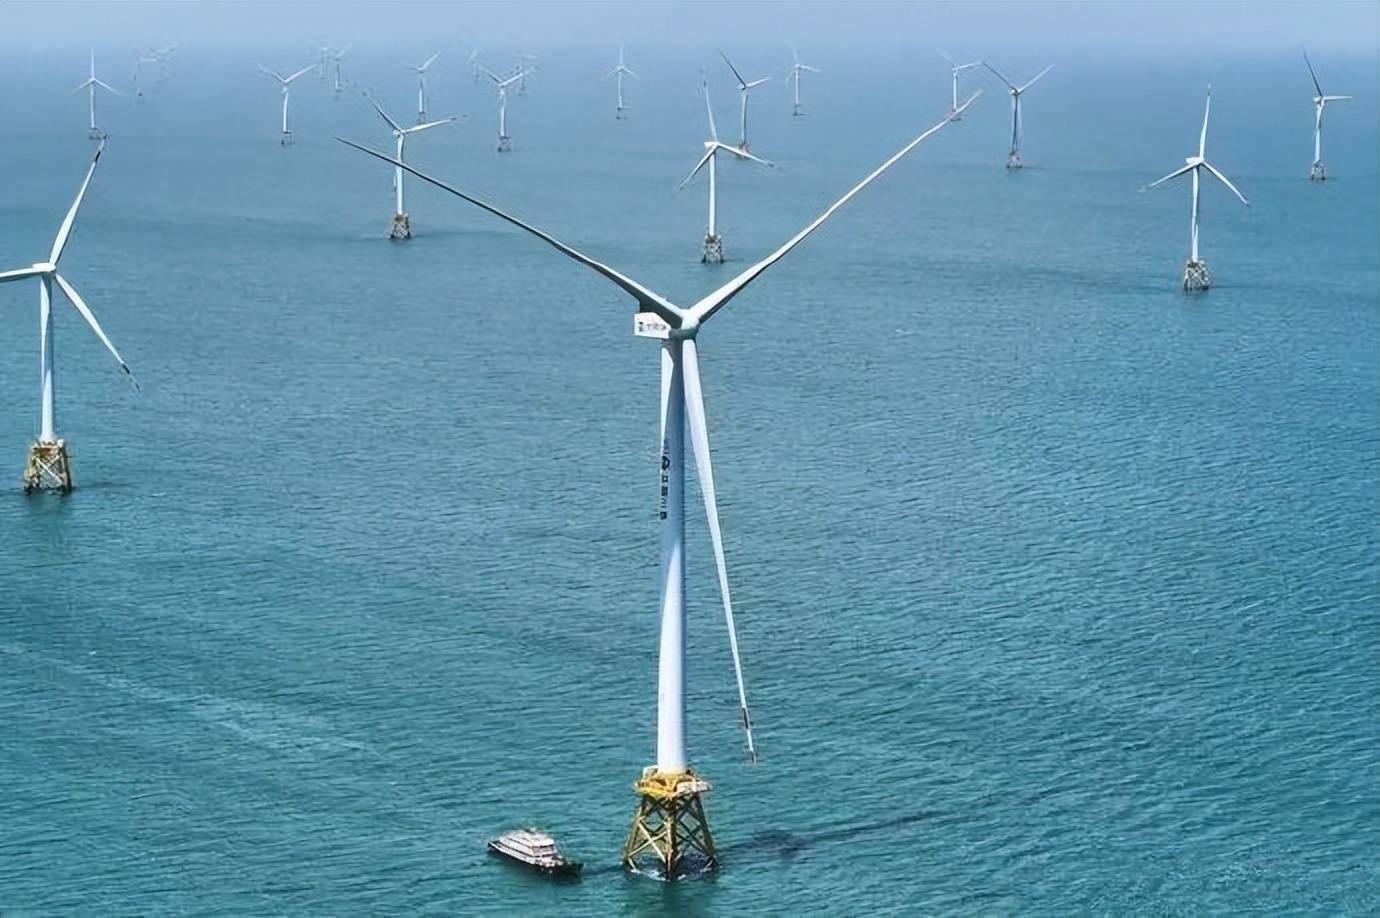 今年9月2日,央视新闻等媒体报道称世界风力发电机组最大日发电量纪录